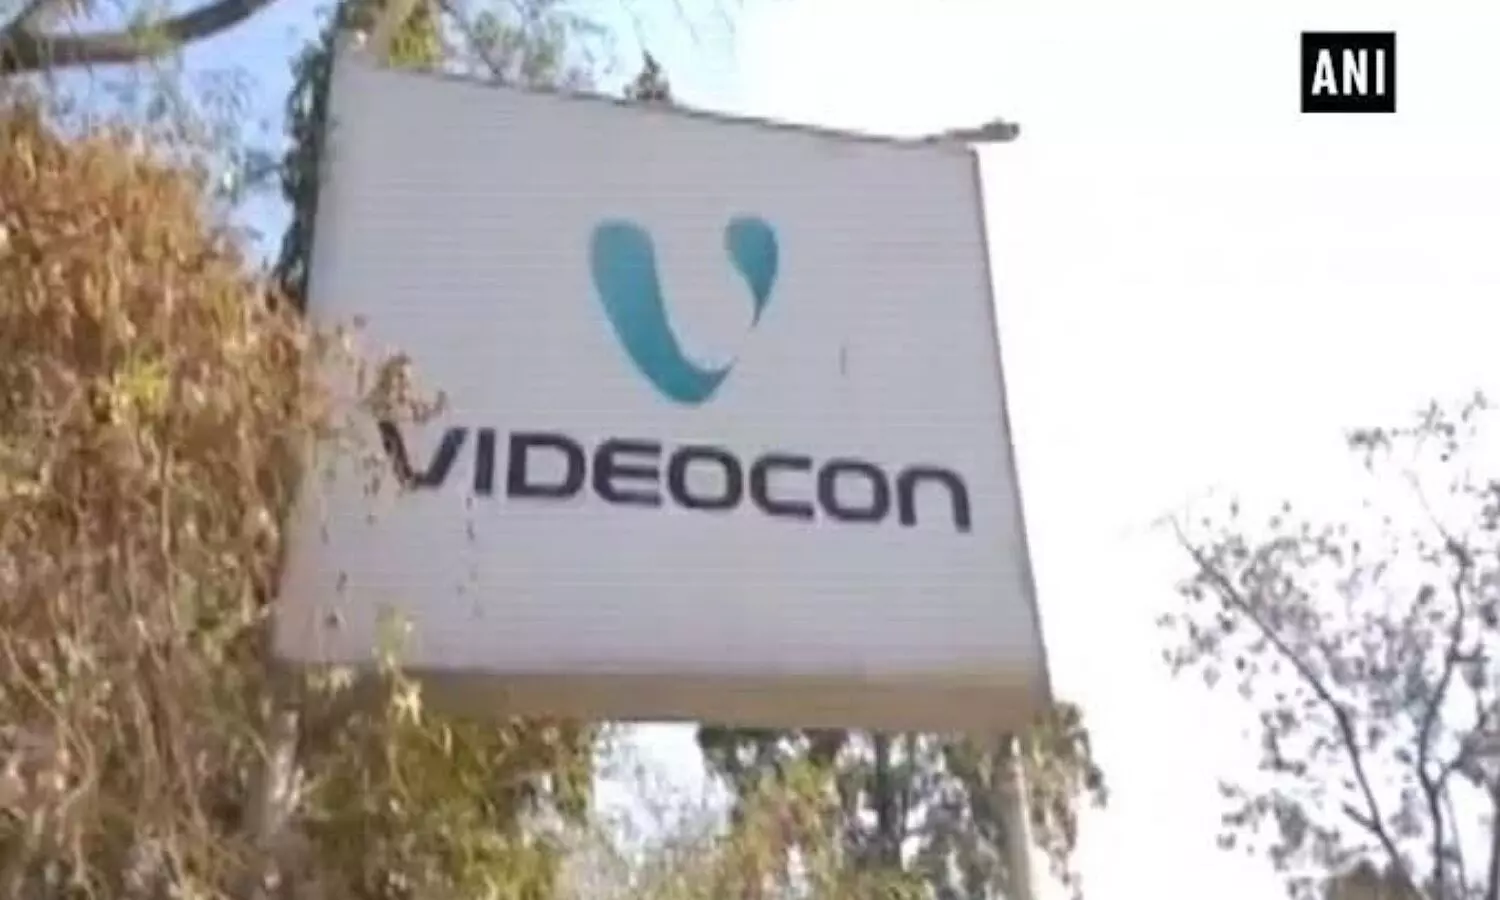 Sfio investigation on Videocon grop